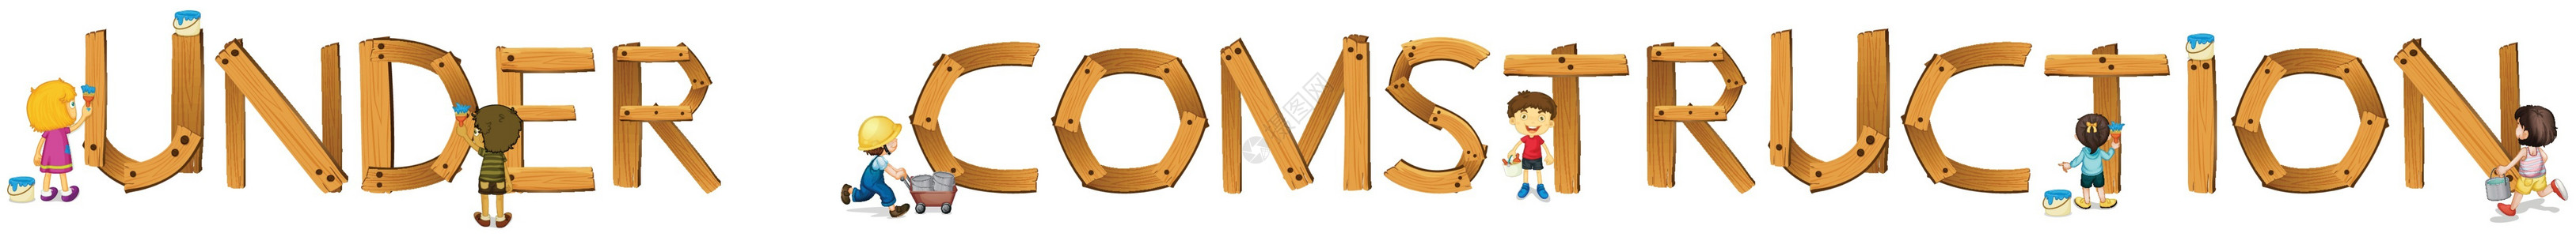 建设字体素材建设中的英语单词装修木板材料脚本教育孩子们木头卡通片字母学校设计图片